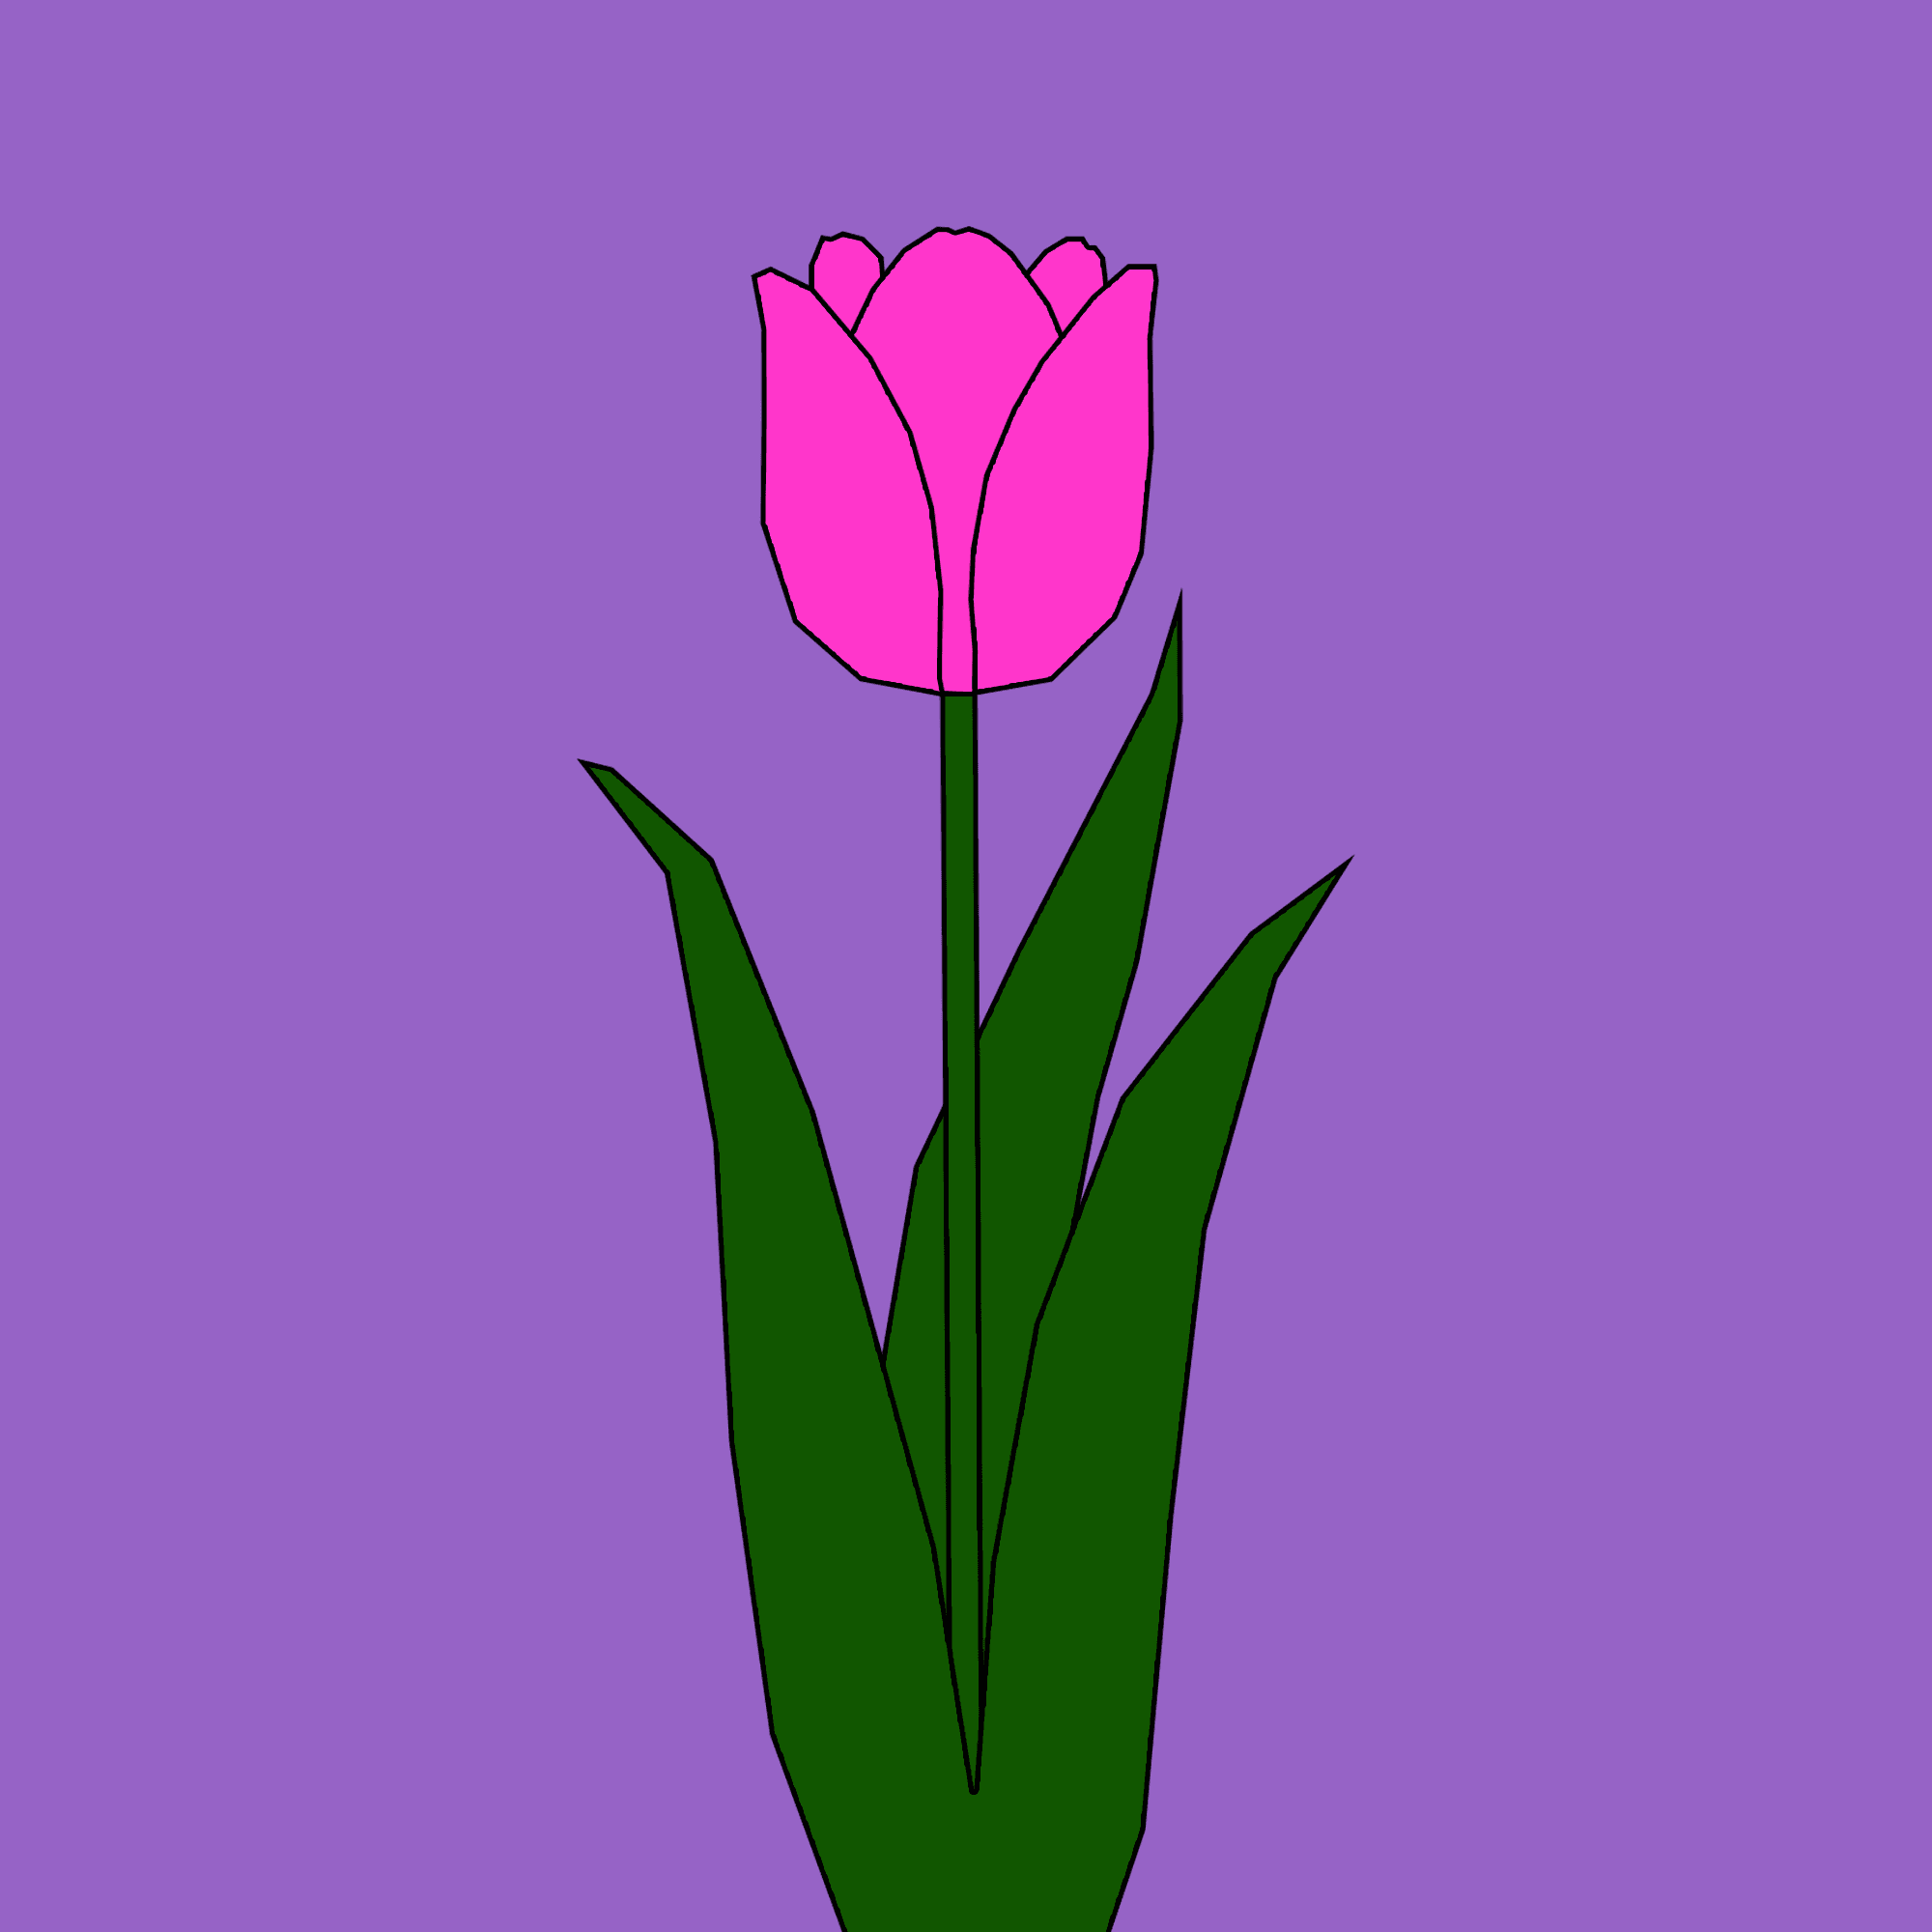 Hoa tulip nướng - sự kết hợp hoàn hảo giữa mùi thơm của hoa và vị ngọt của bánh kếp bên trong. Thực đơn bạn phải thử ít nhất một lần trong đời! Nhấn vào hình ảnh để được hướng dẫn cách làm bánh hoa tulip ngon nhất.